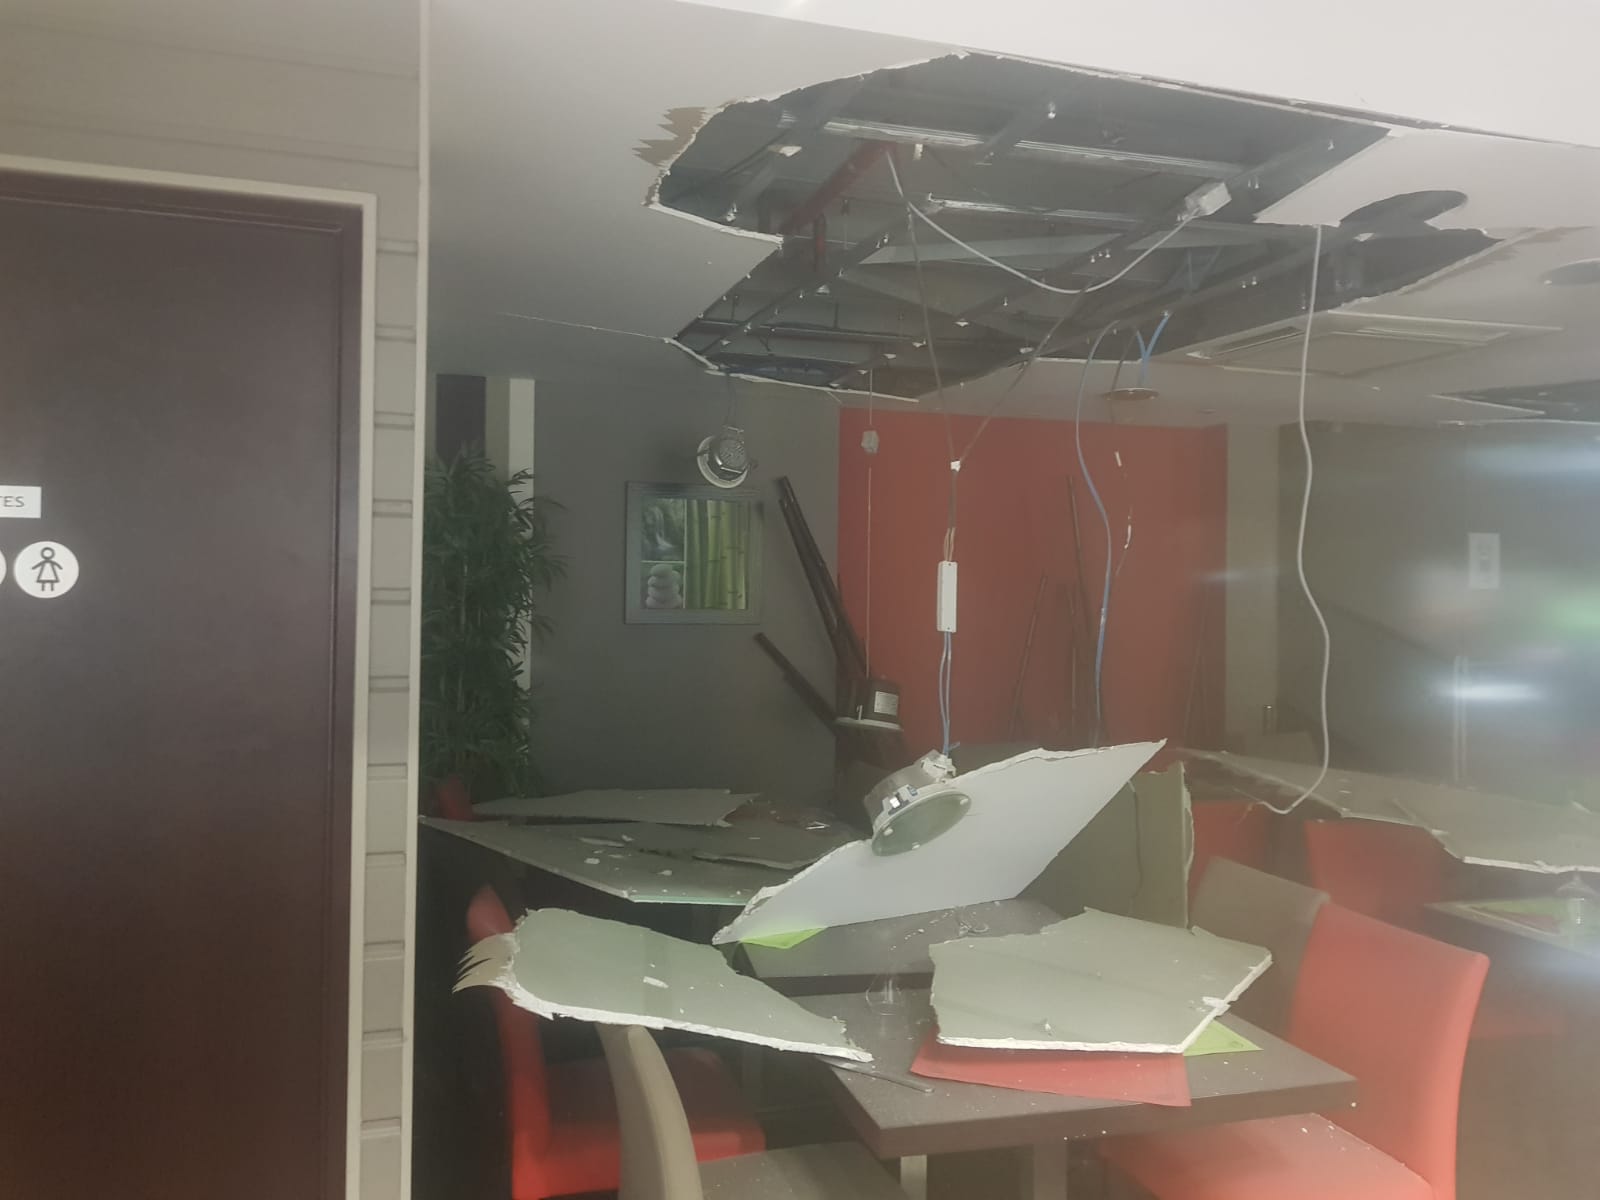     Explosion dans un restaurant à la Galleria : deux victimes et des dégâts matériels

